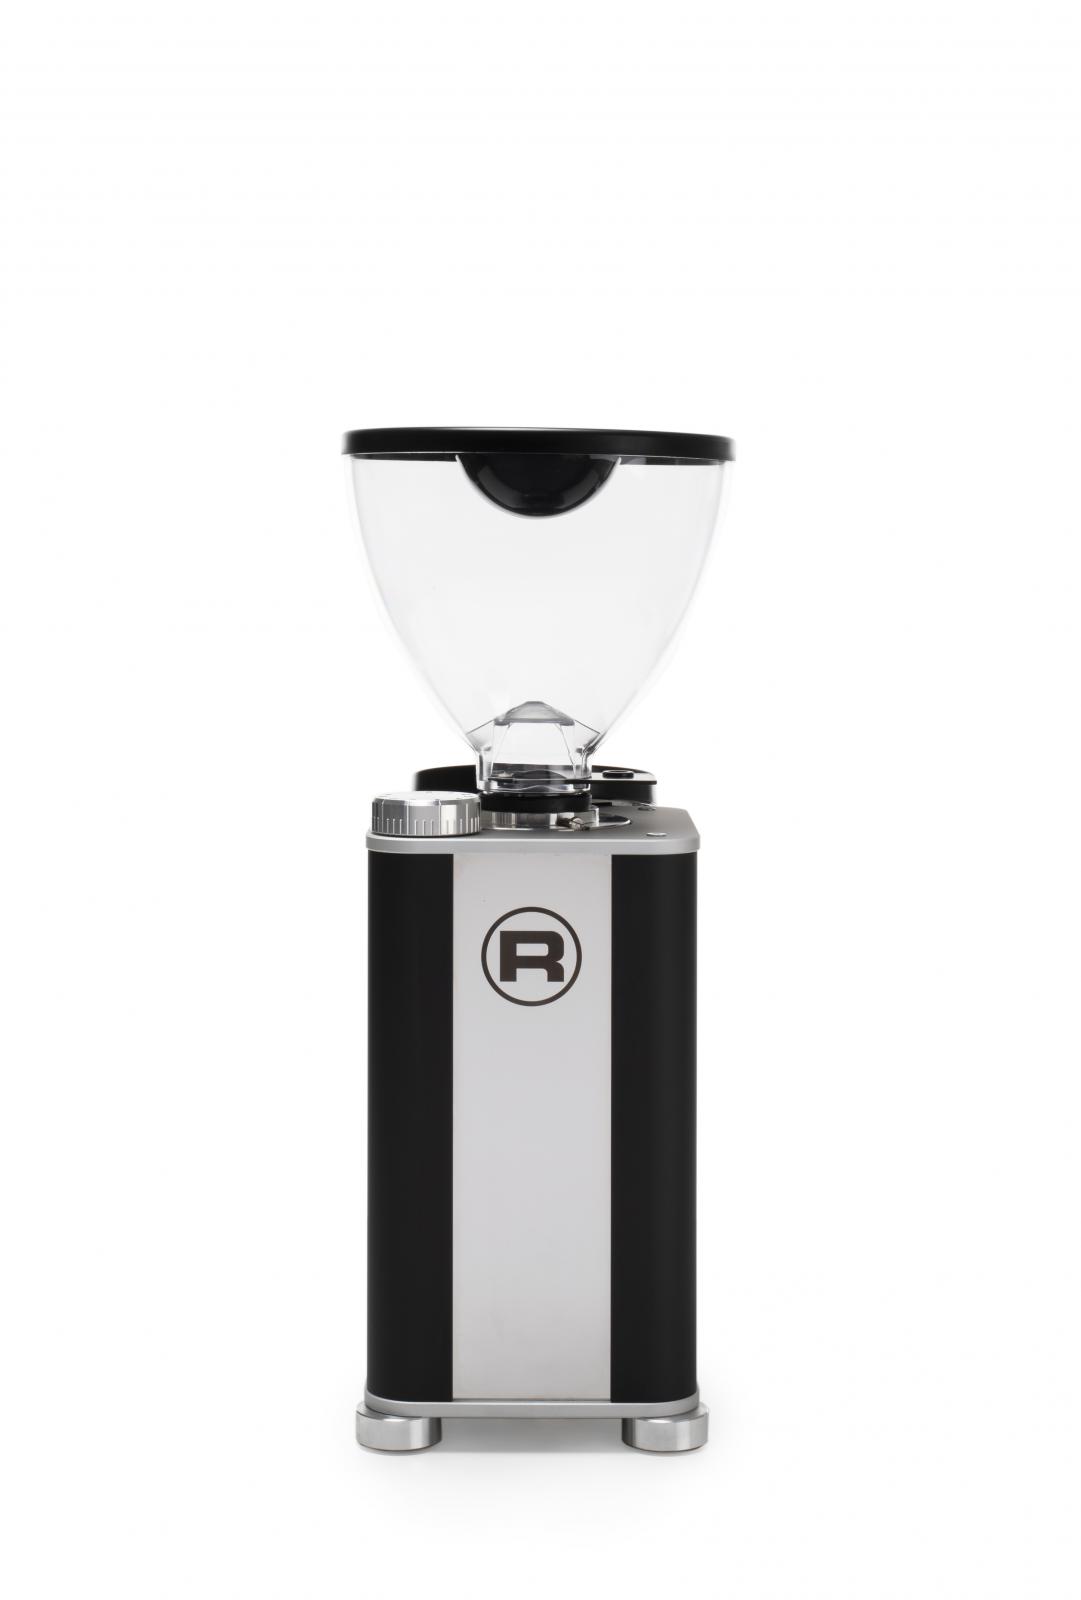 Molinillo Espresso Rocket Faustino 3.1 Negro Mate